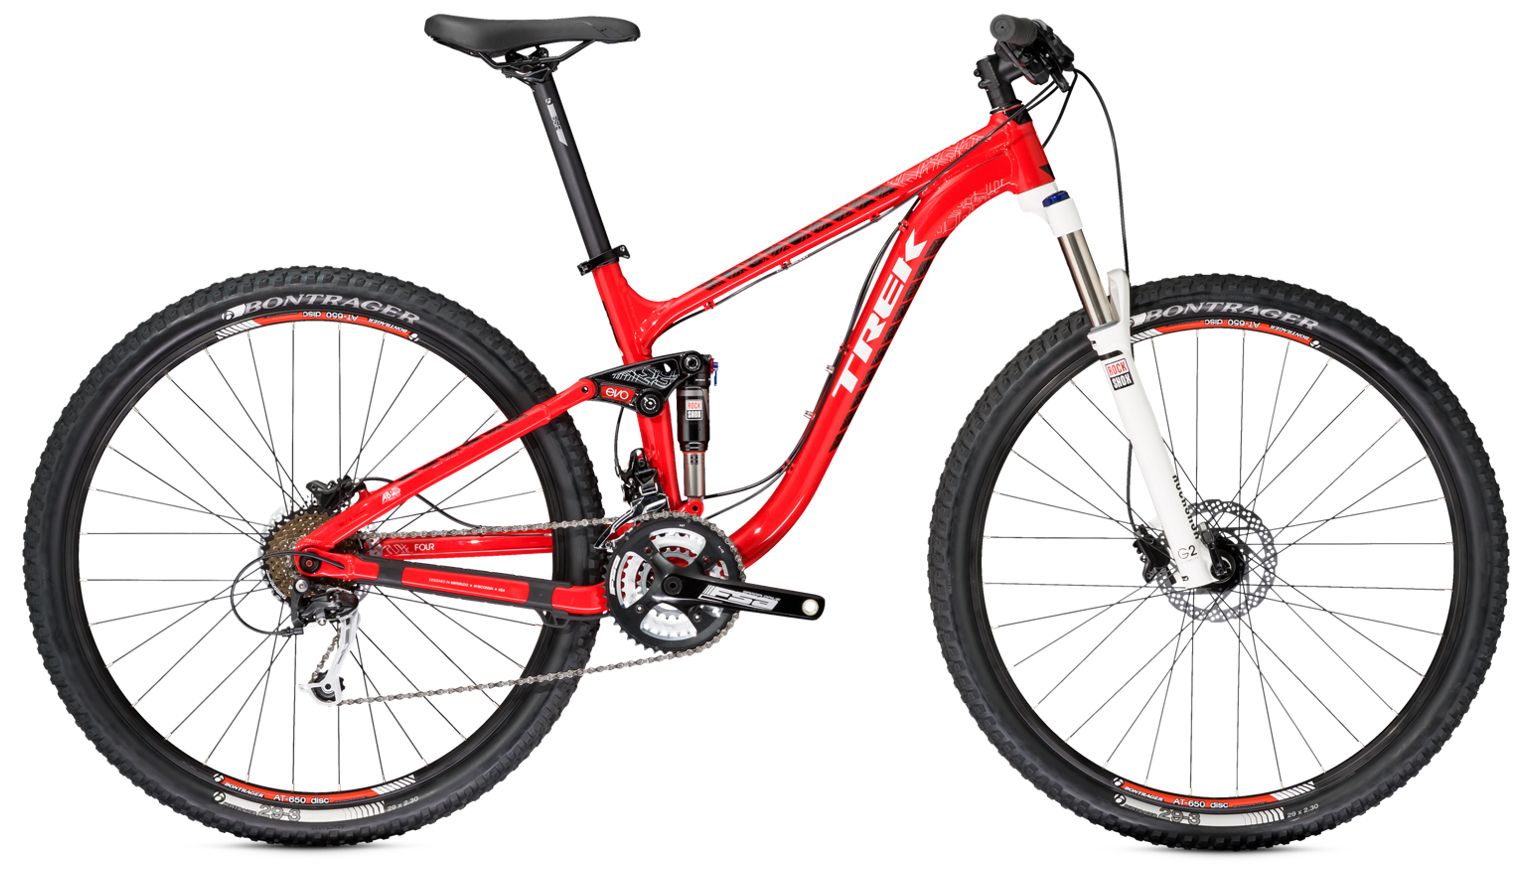  Отзывы о Горном велосипеде Trek Fuel EX 4 29 2014